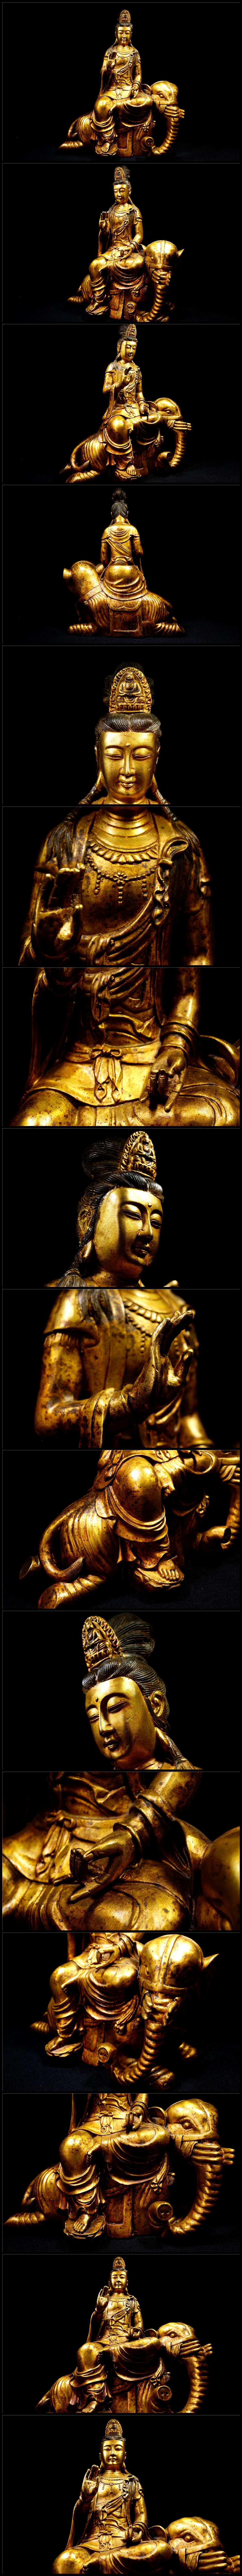 【低価お得】金銅細工 仏教 大迫力文殊菩造像高彫 鎮宅 開運置物 極上質 高さ約40cm 仏像